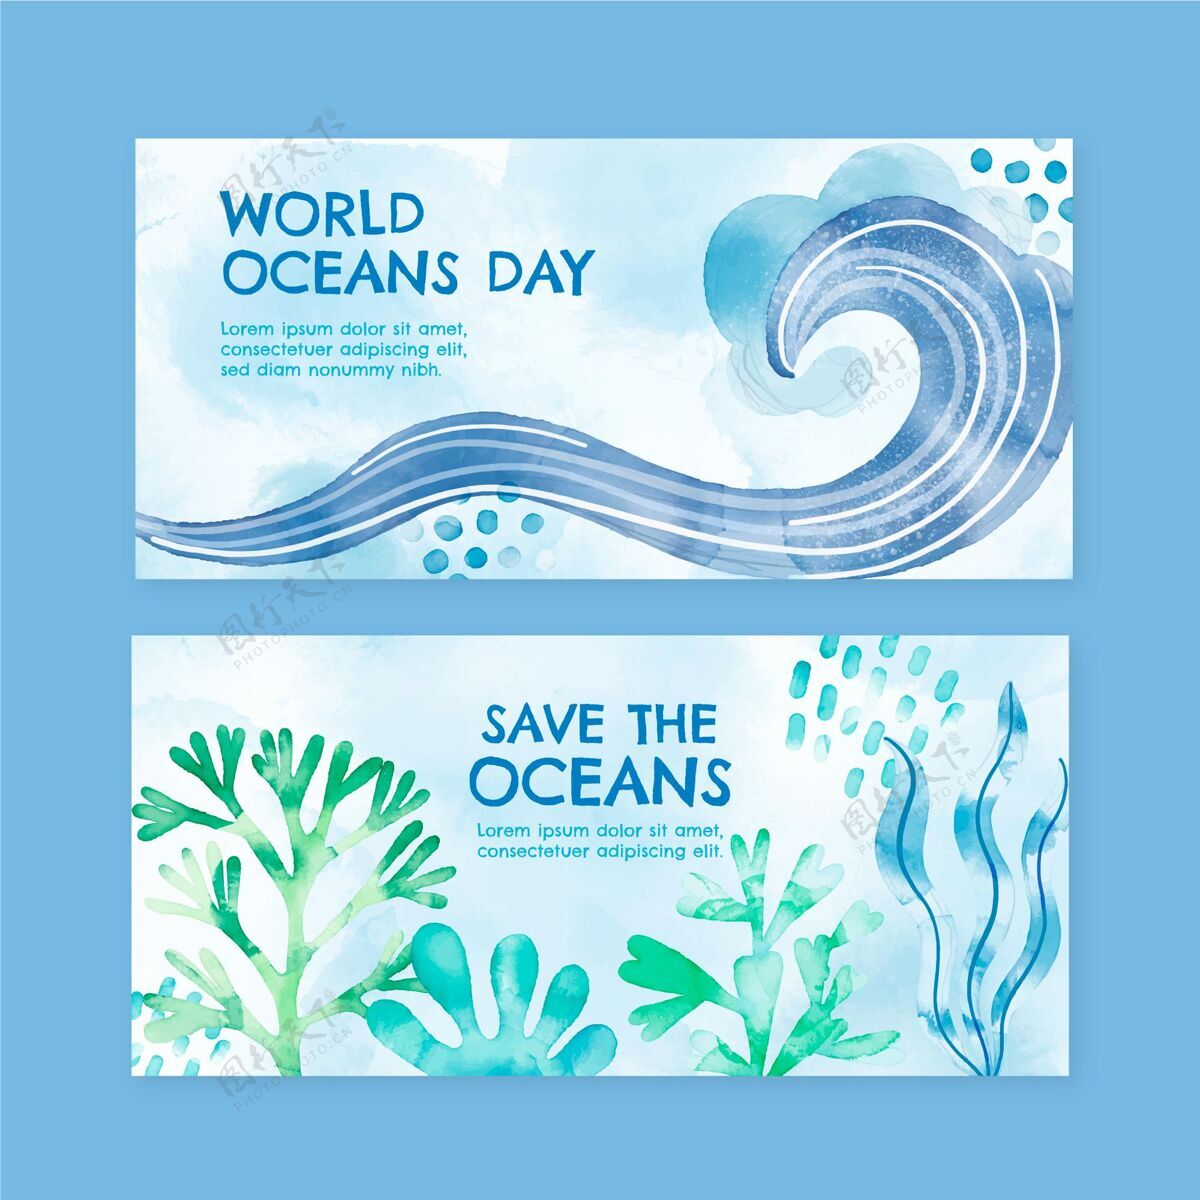 活动手绘水彩画世界海洋日横幅集海洋地球生态系统